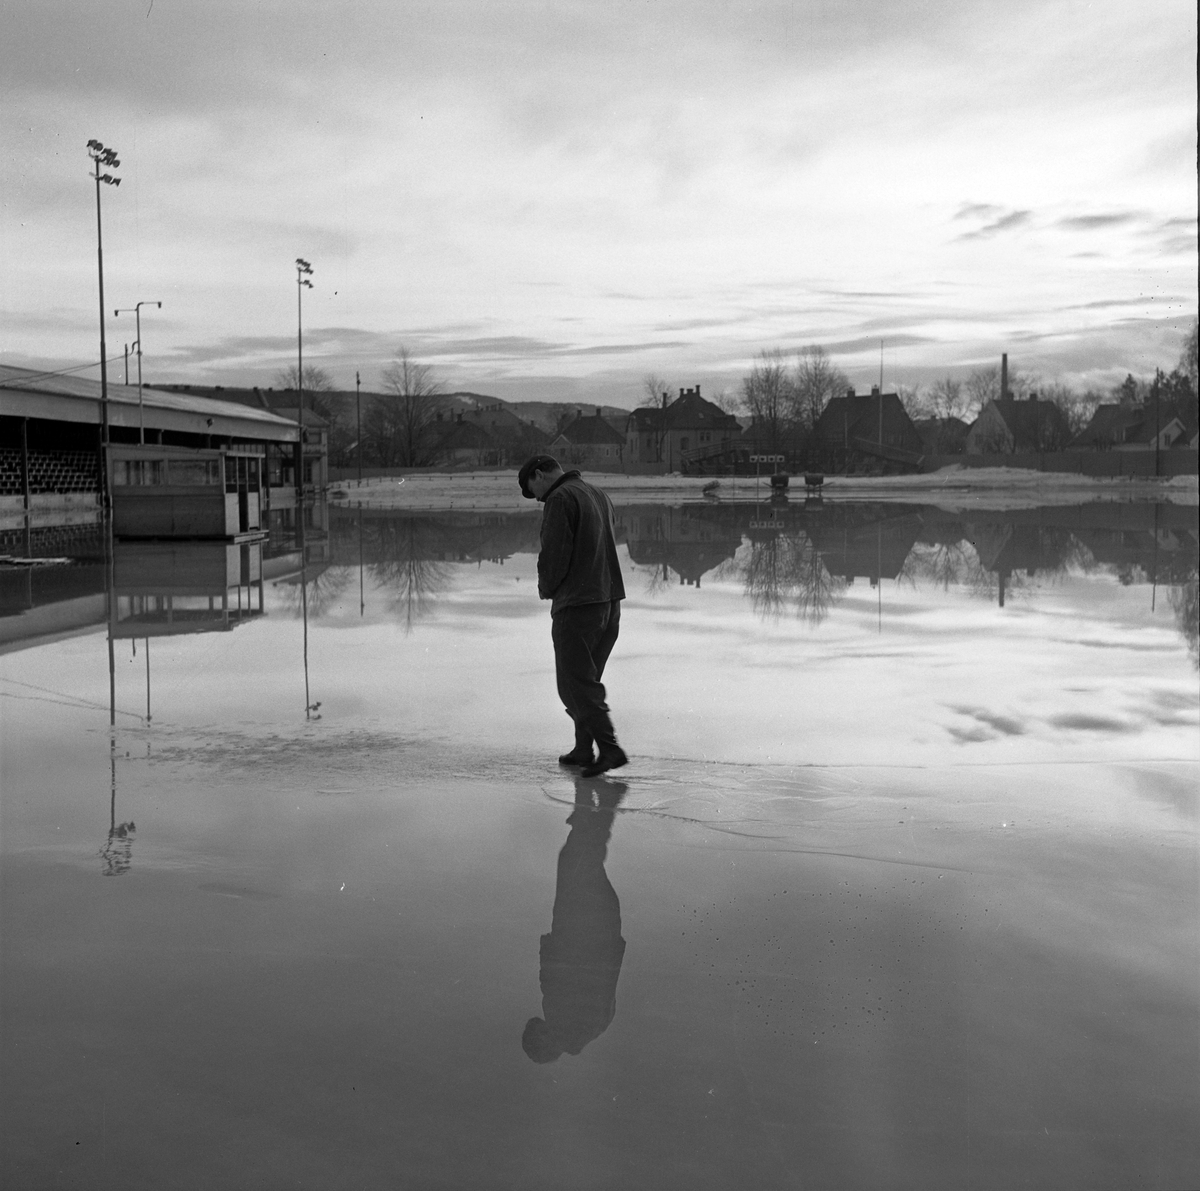 Oversvømmelse på Stadion foran landskampen. Banemester Thingstad studerer forholdene